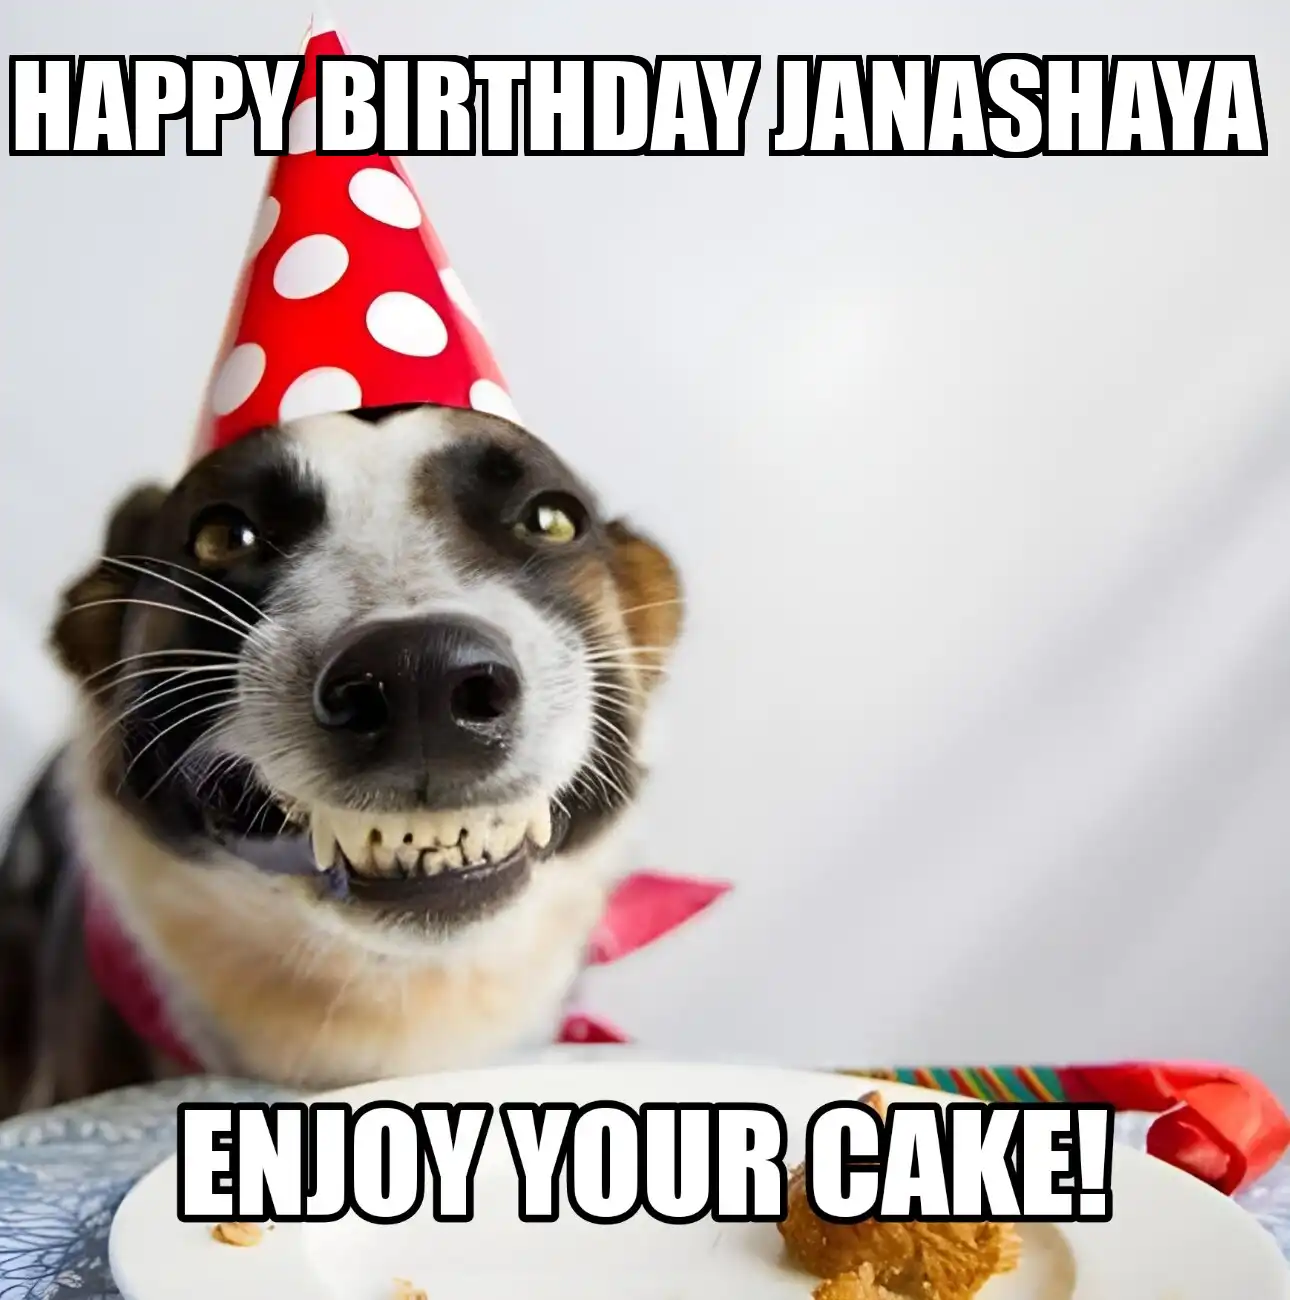 Happy Birthday Janashaya Enjoy Your Cake Dog Meme